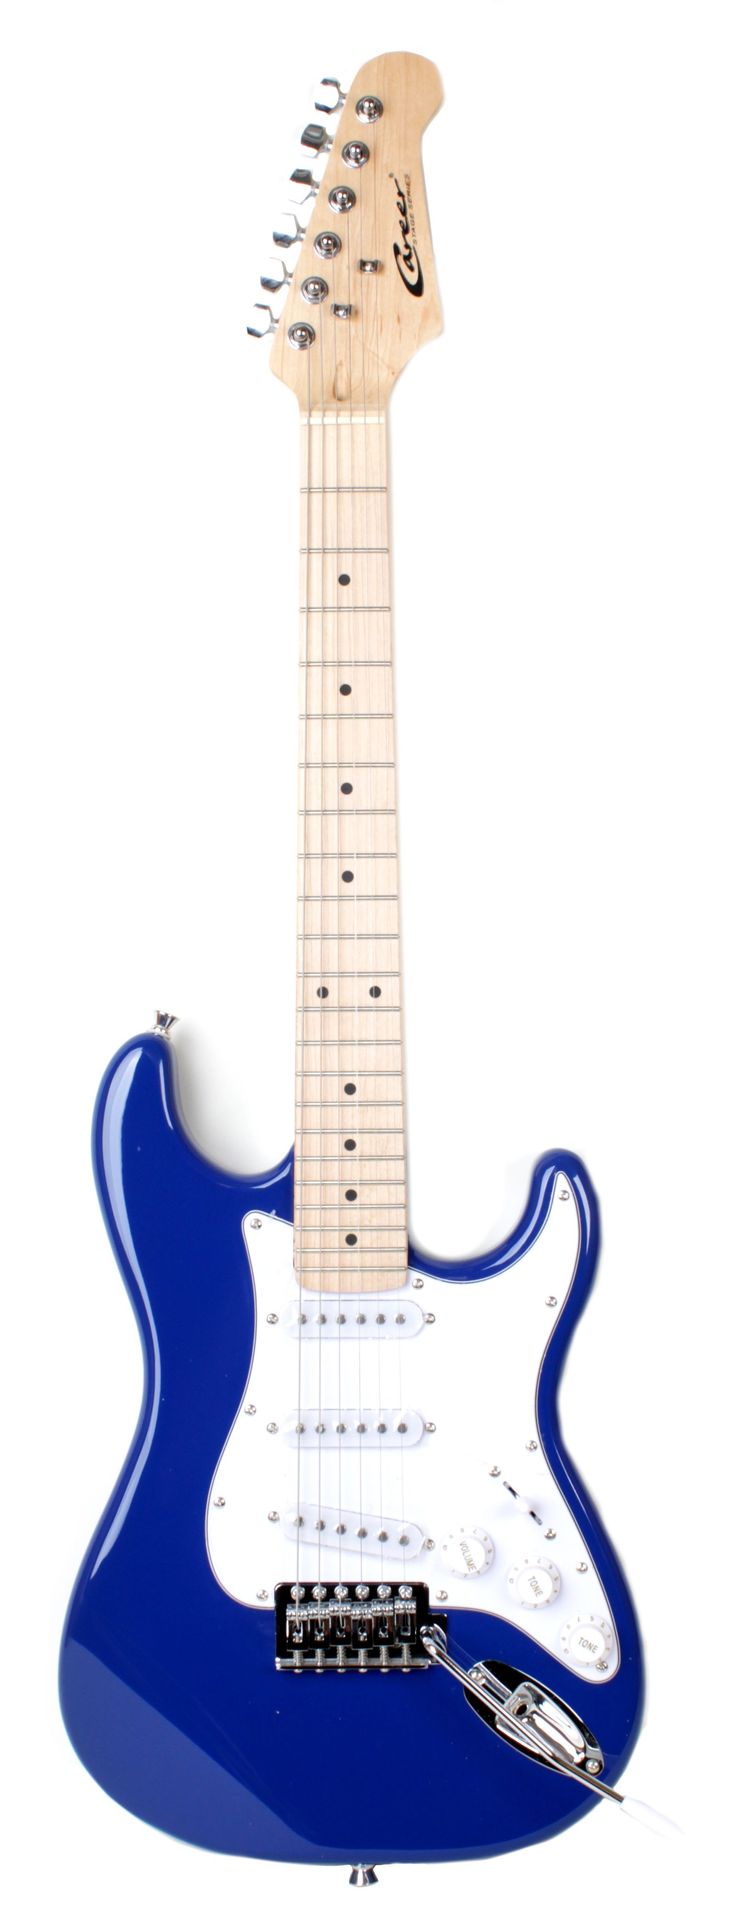 Career Stage 1 Junior E-Gitarre für Kinder Blue 57er Mensur 